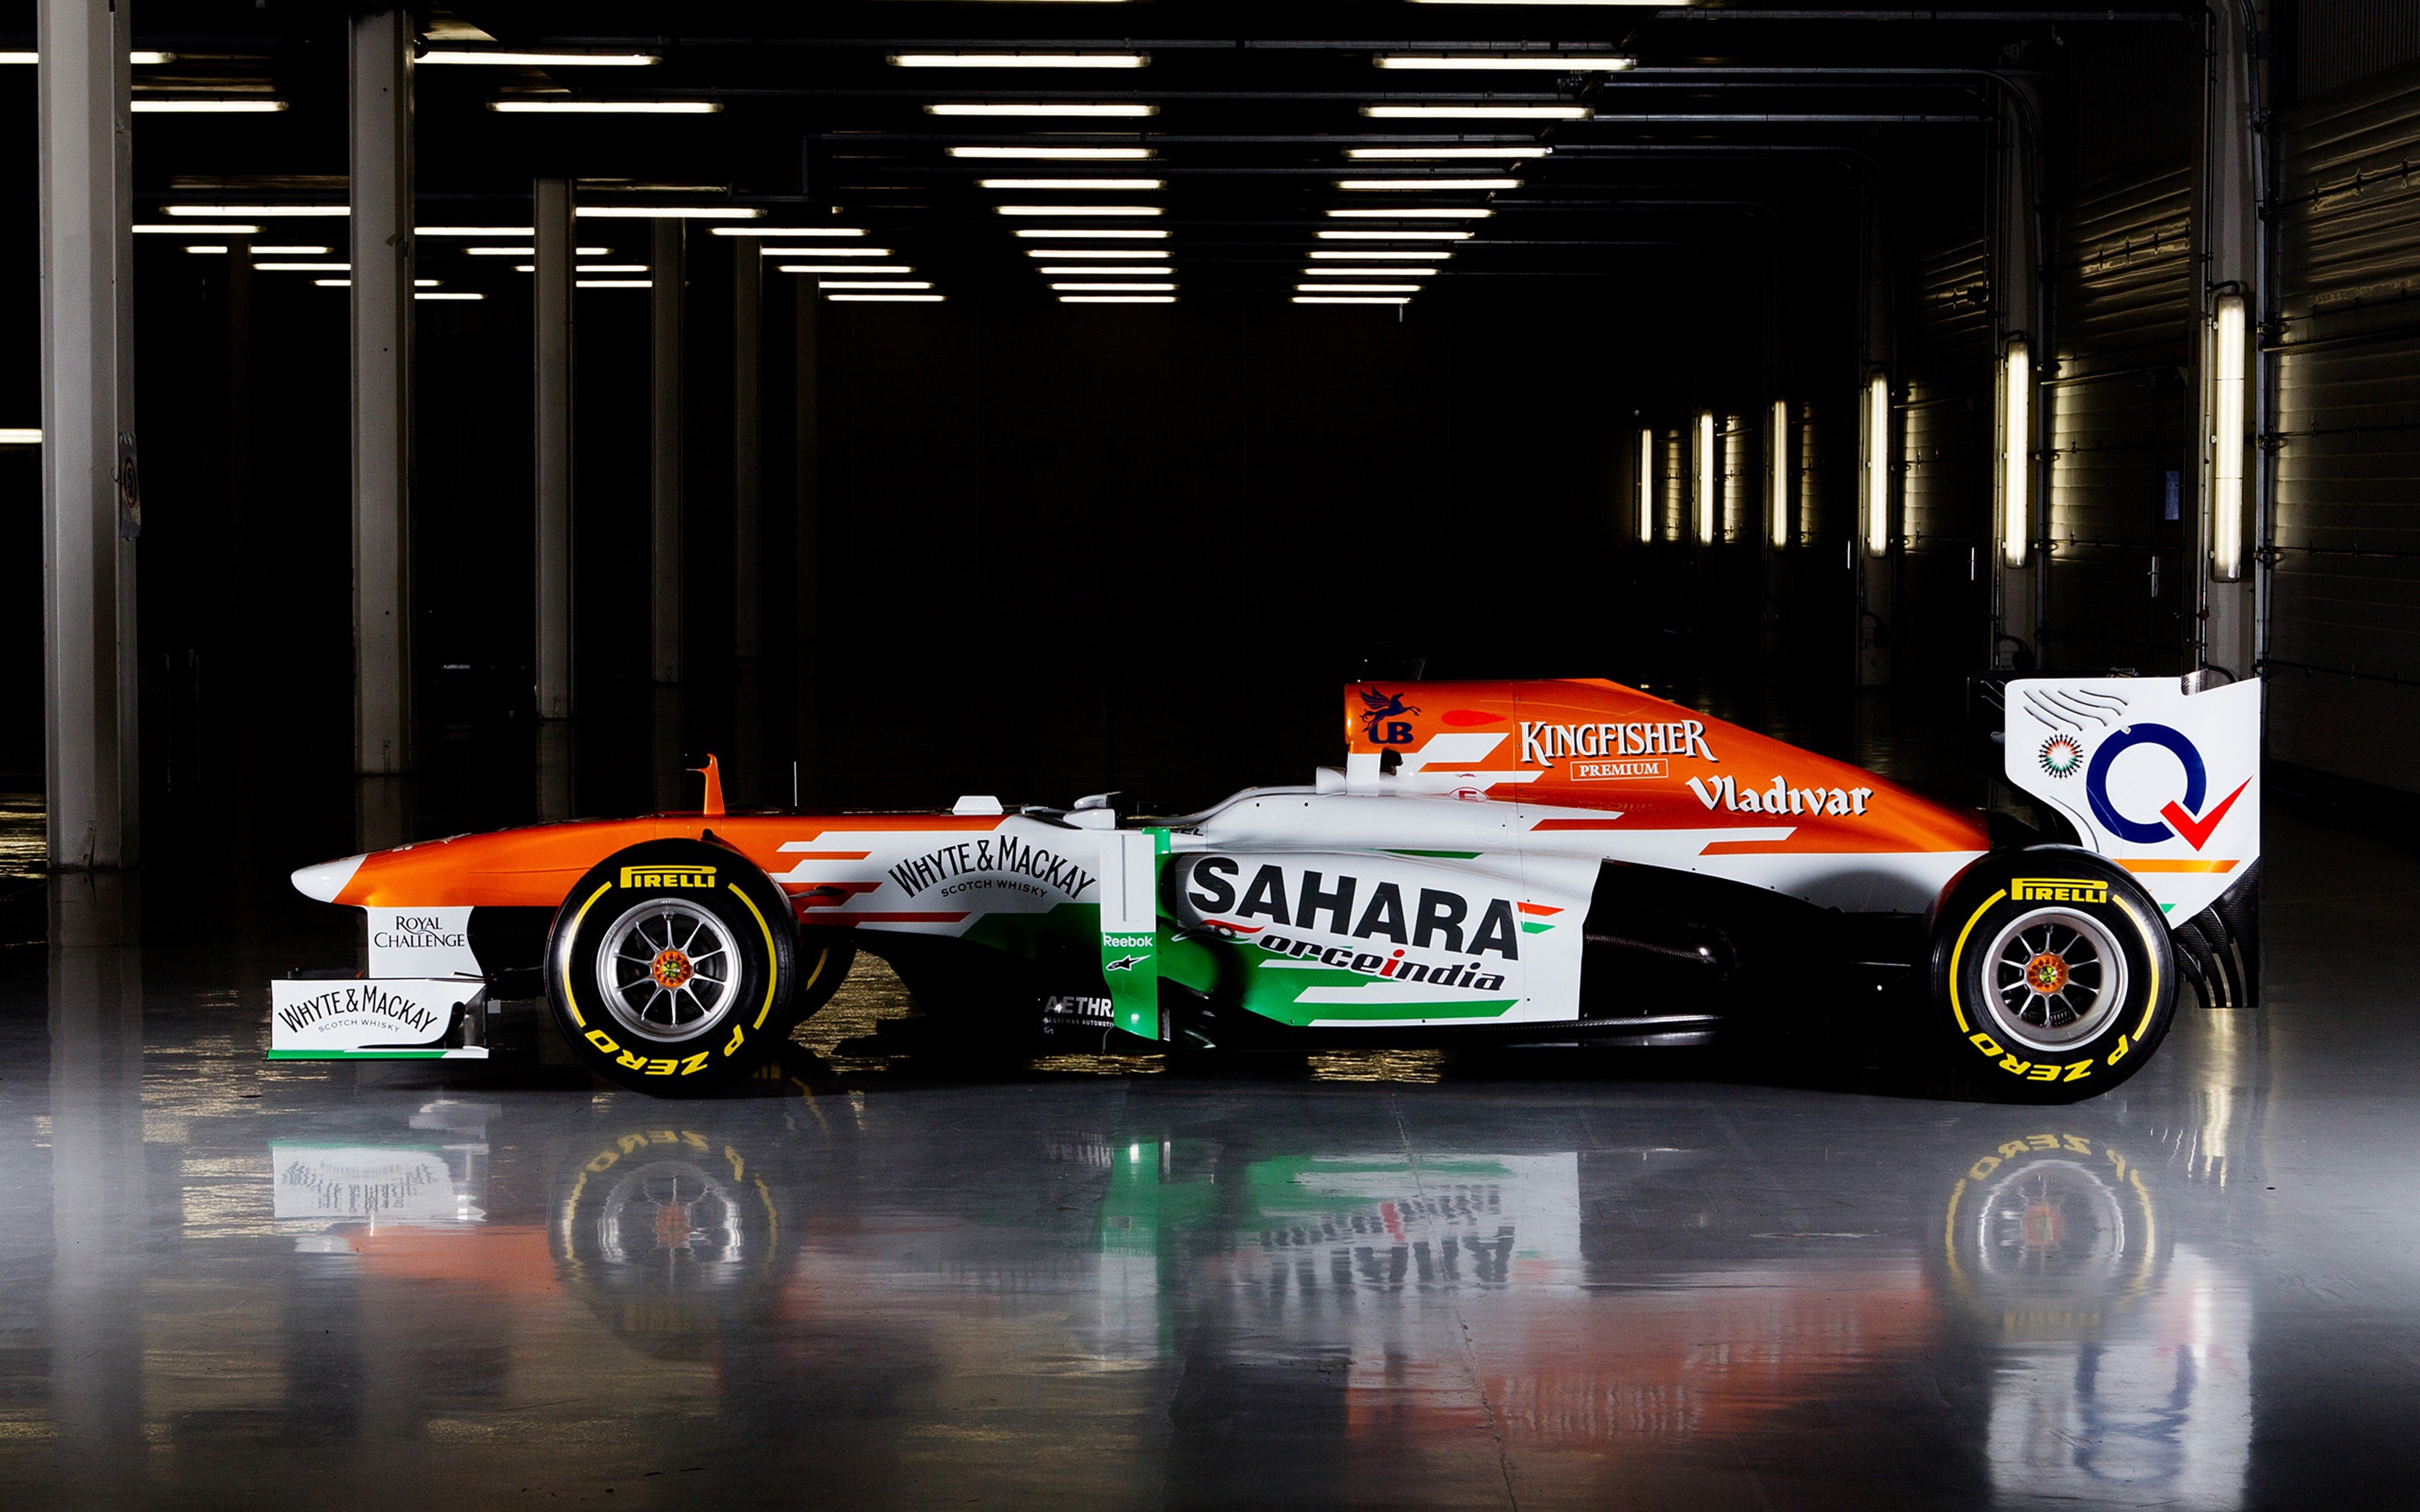 Formula Force India Vjm06 Race Car Racing Vehicle